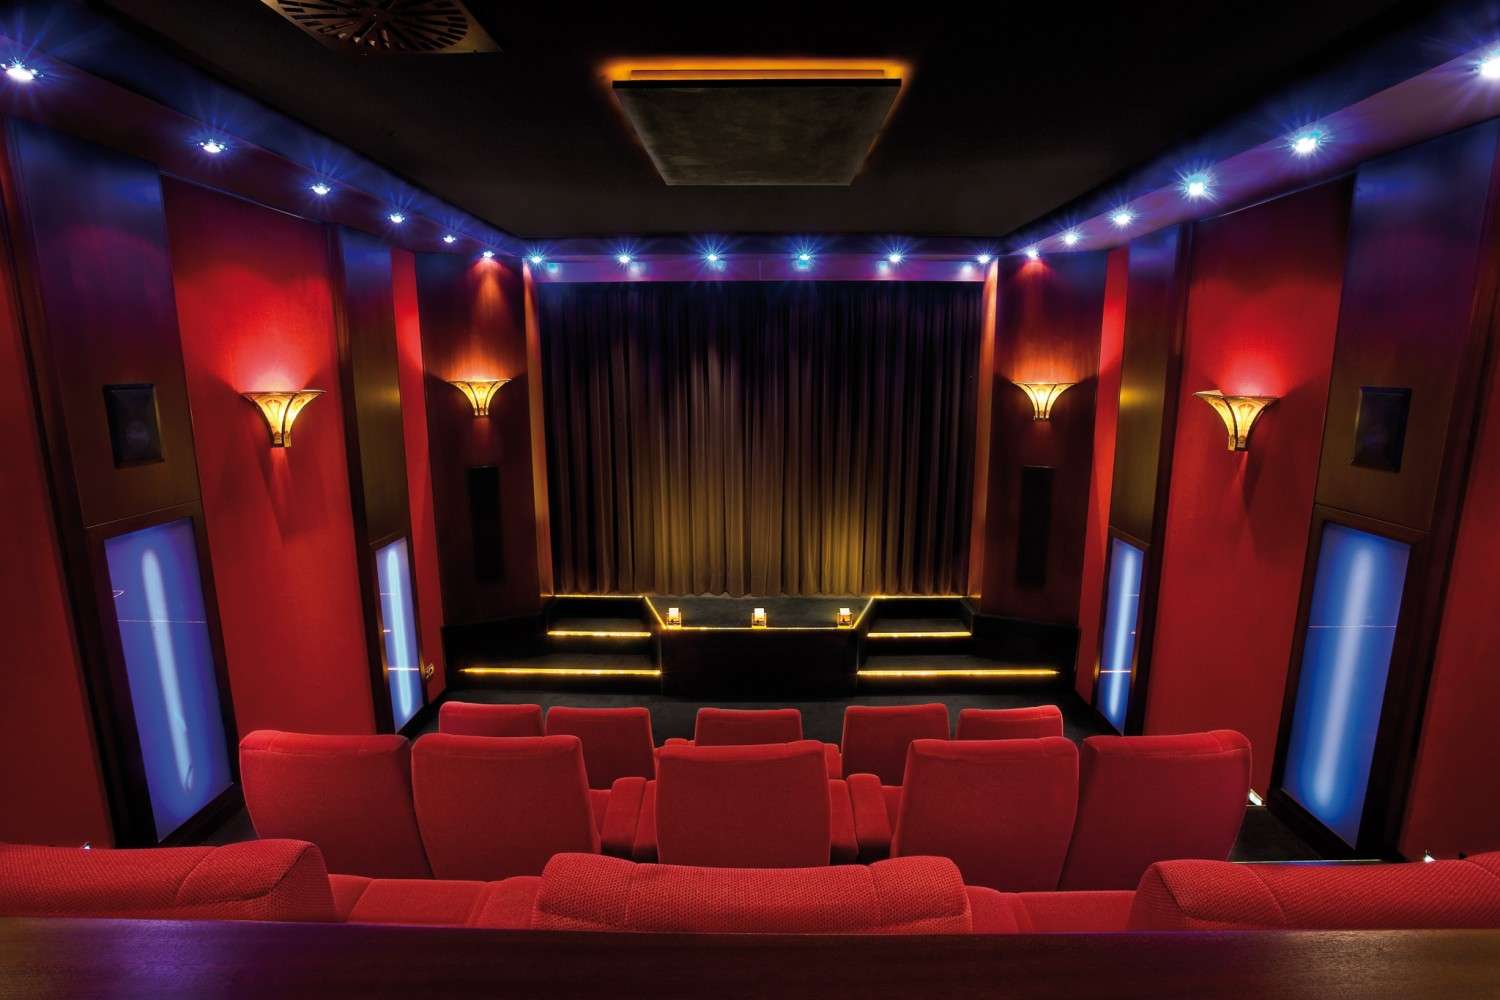 Ratgeber Salino Kino: Bar, Foyer, Riesenkino: das private Lichtspielhaus der Superlative - News, Bild 11